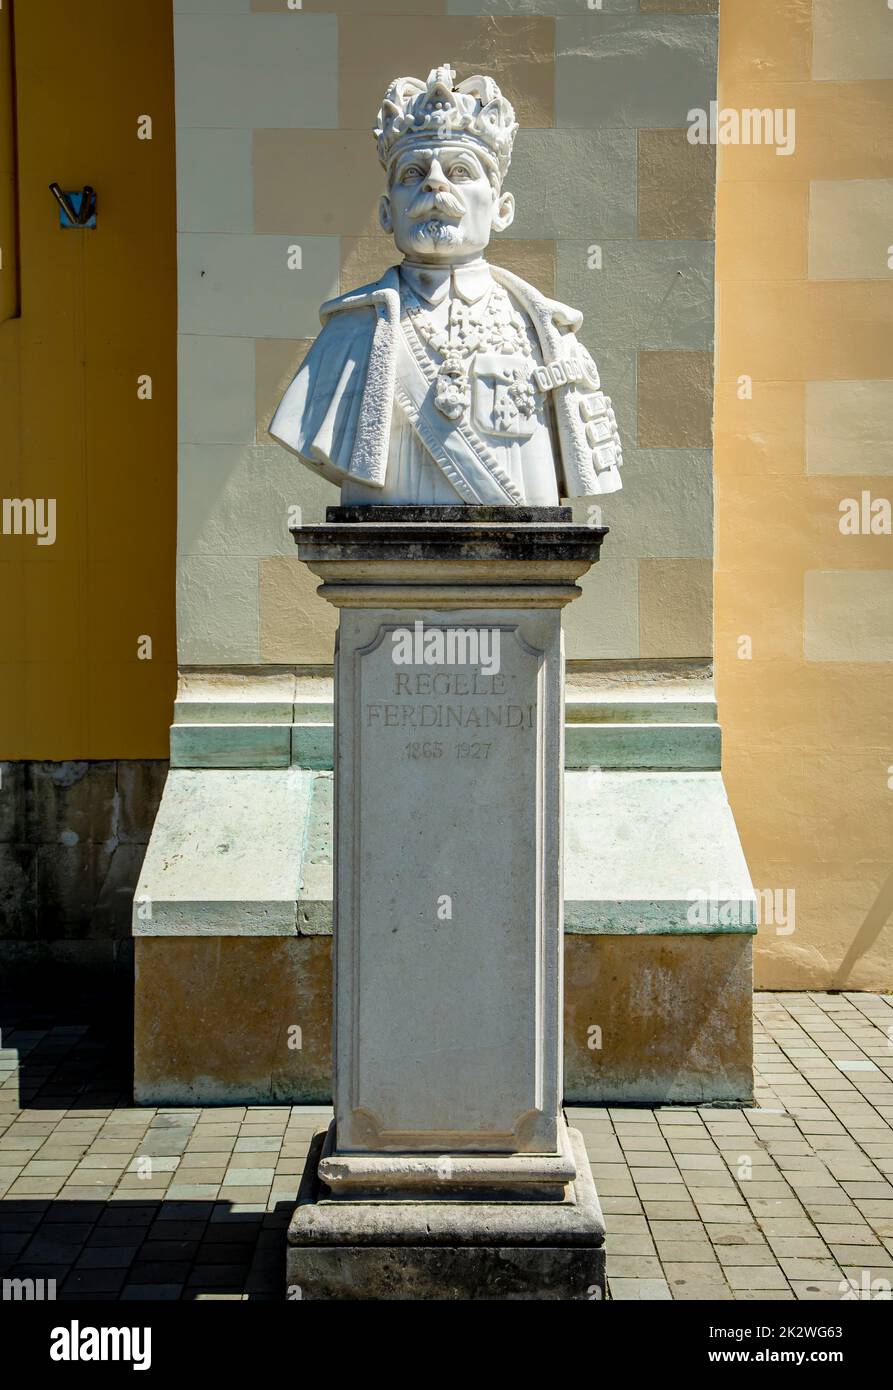 Statua del re Ferdinando i, re di Romania, di fronte alla Cattedrale dell'Incoronazione di Alba Iulia, Transilvania, Romania. Foto Stock